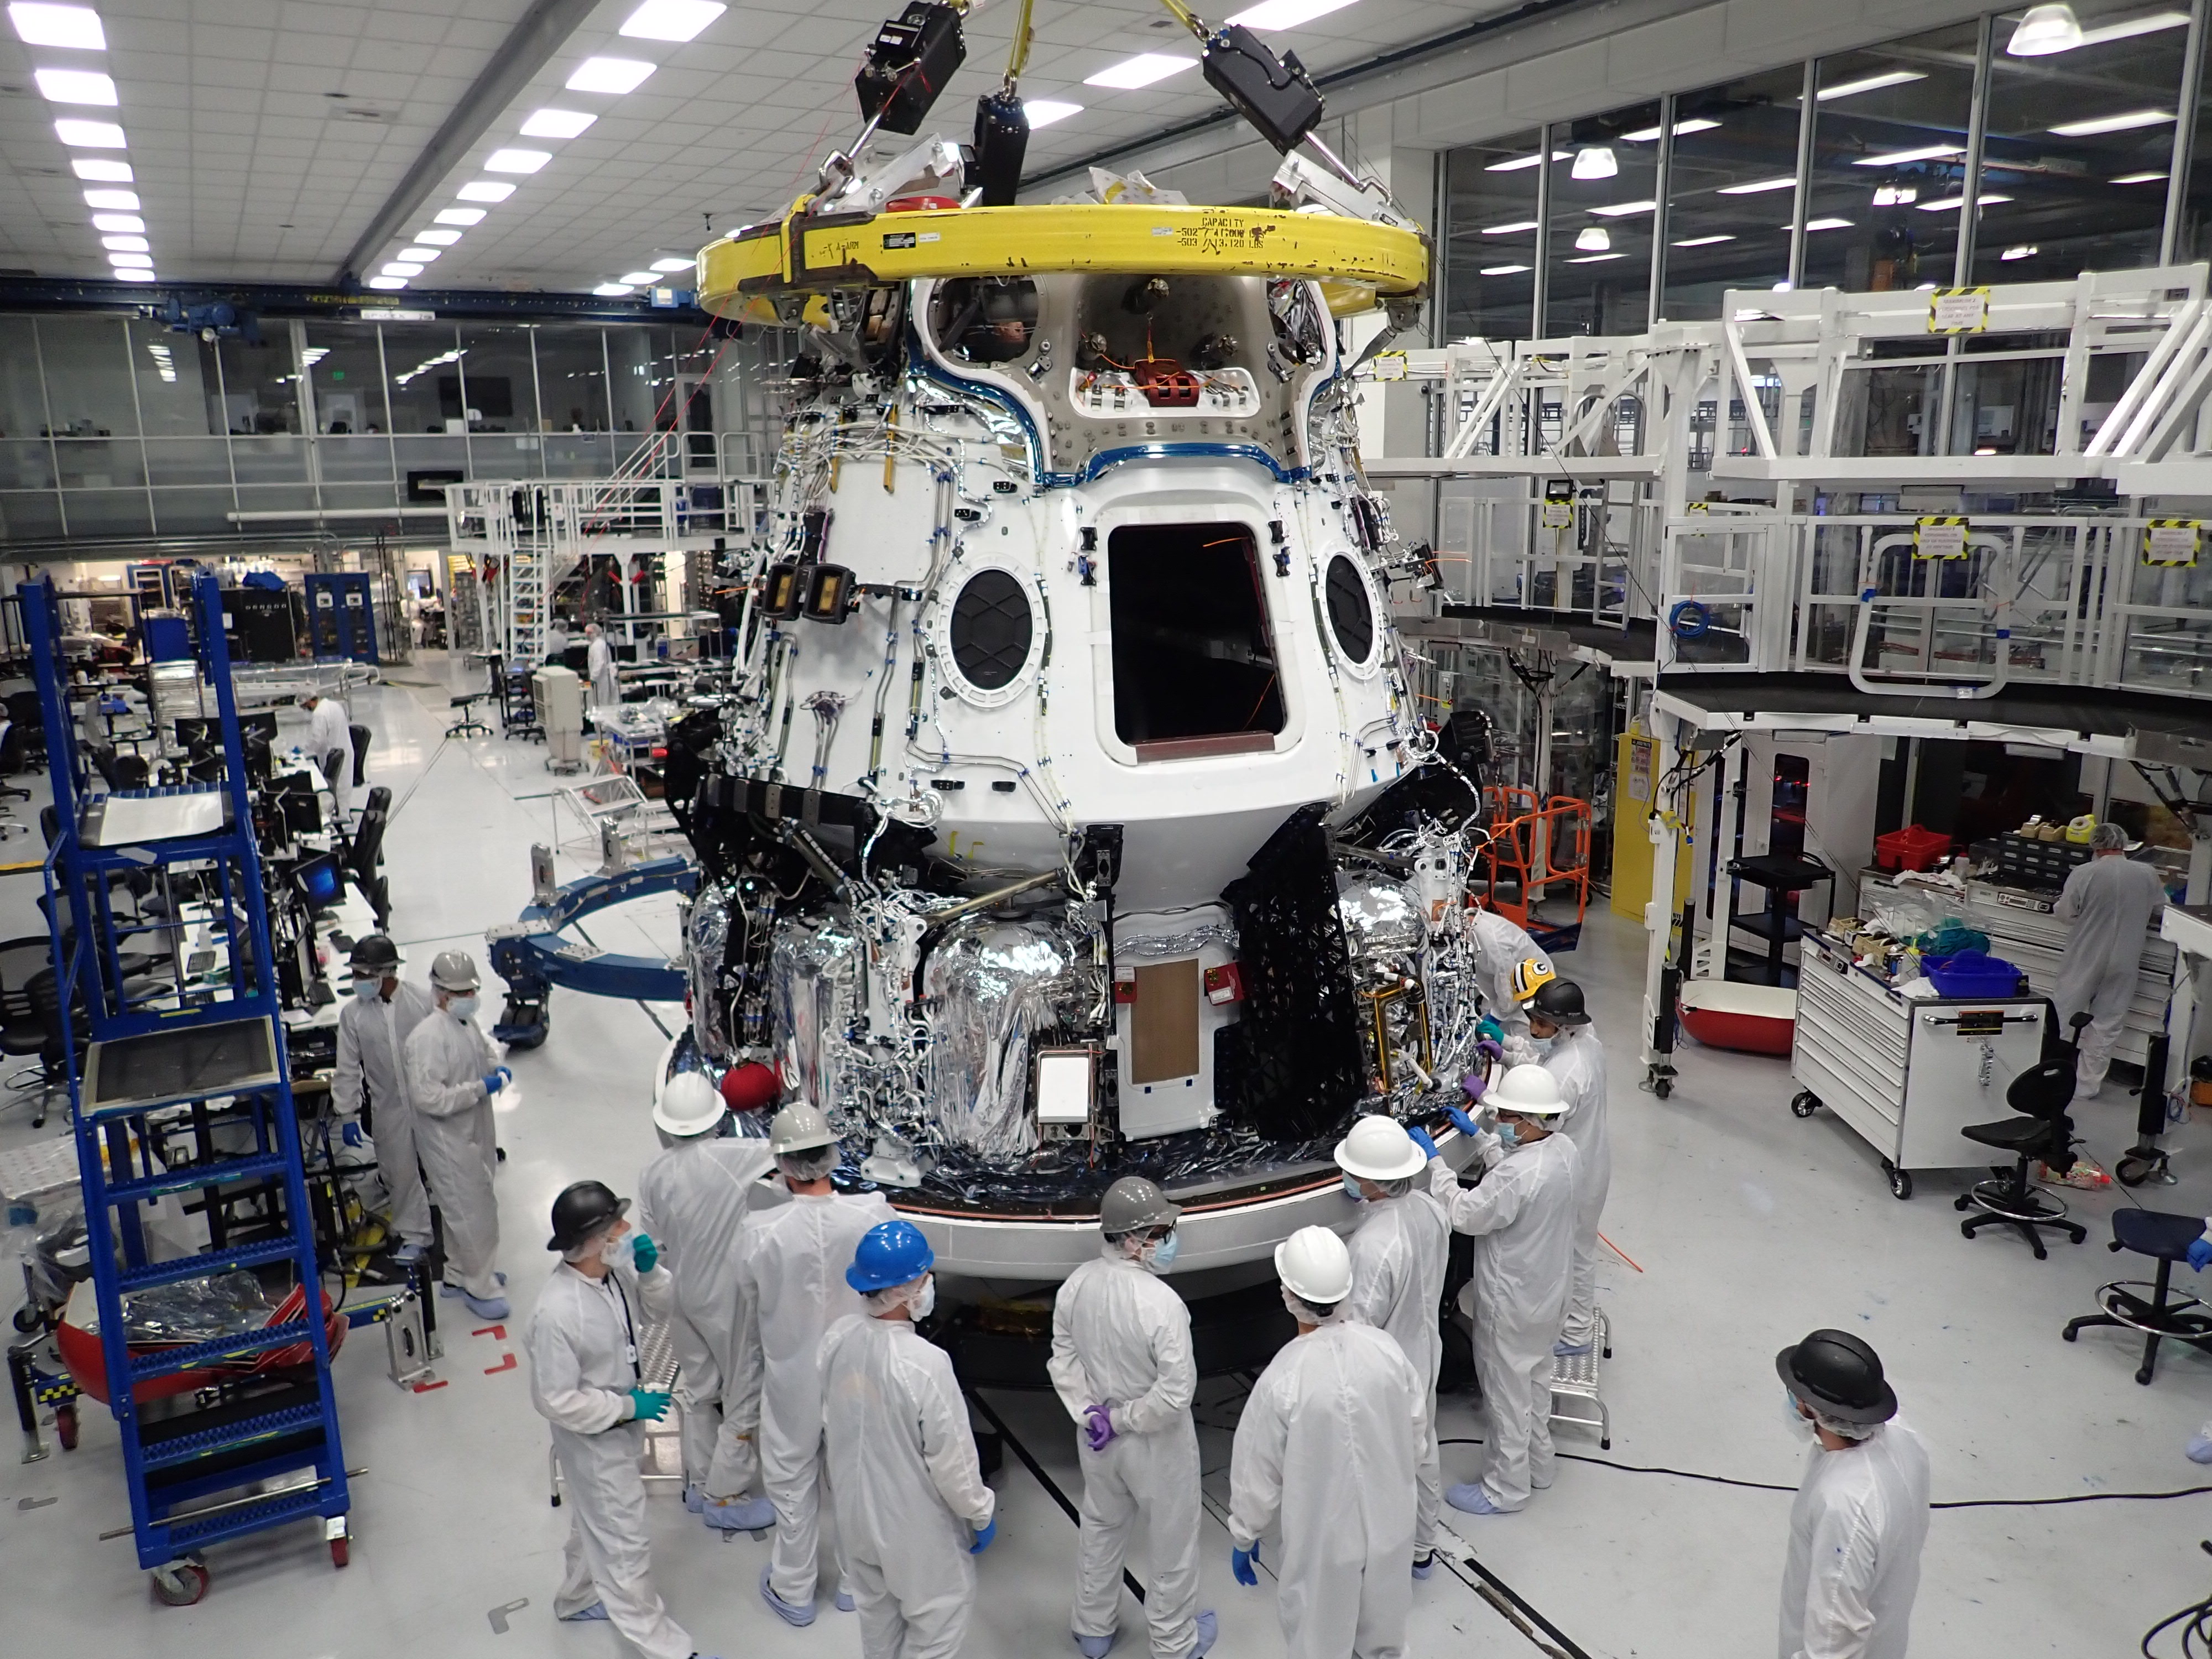 Towarowy Dragon 2 w fabryce SpaceX w Hawthorne (Źródło: SpaceX)